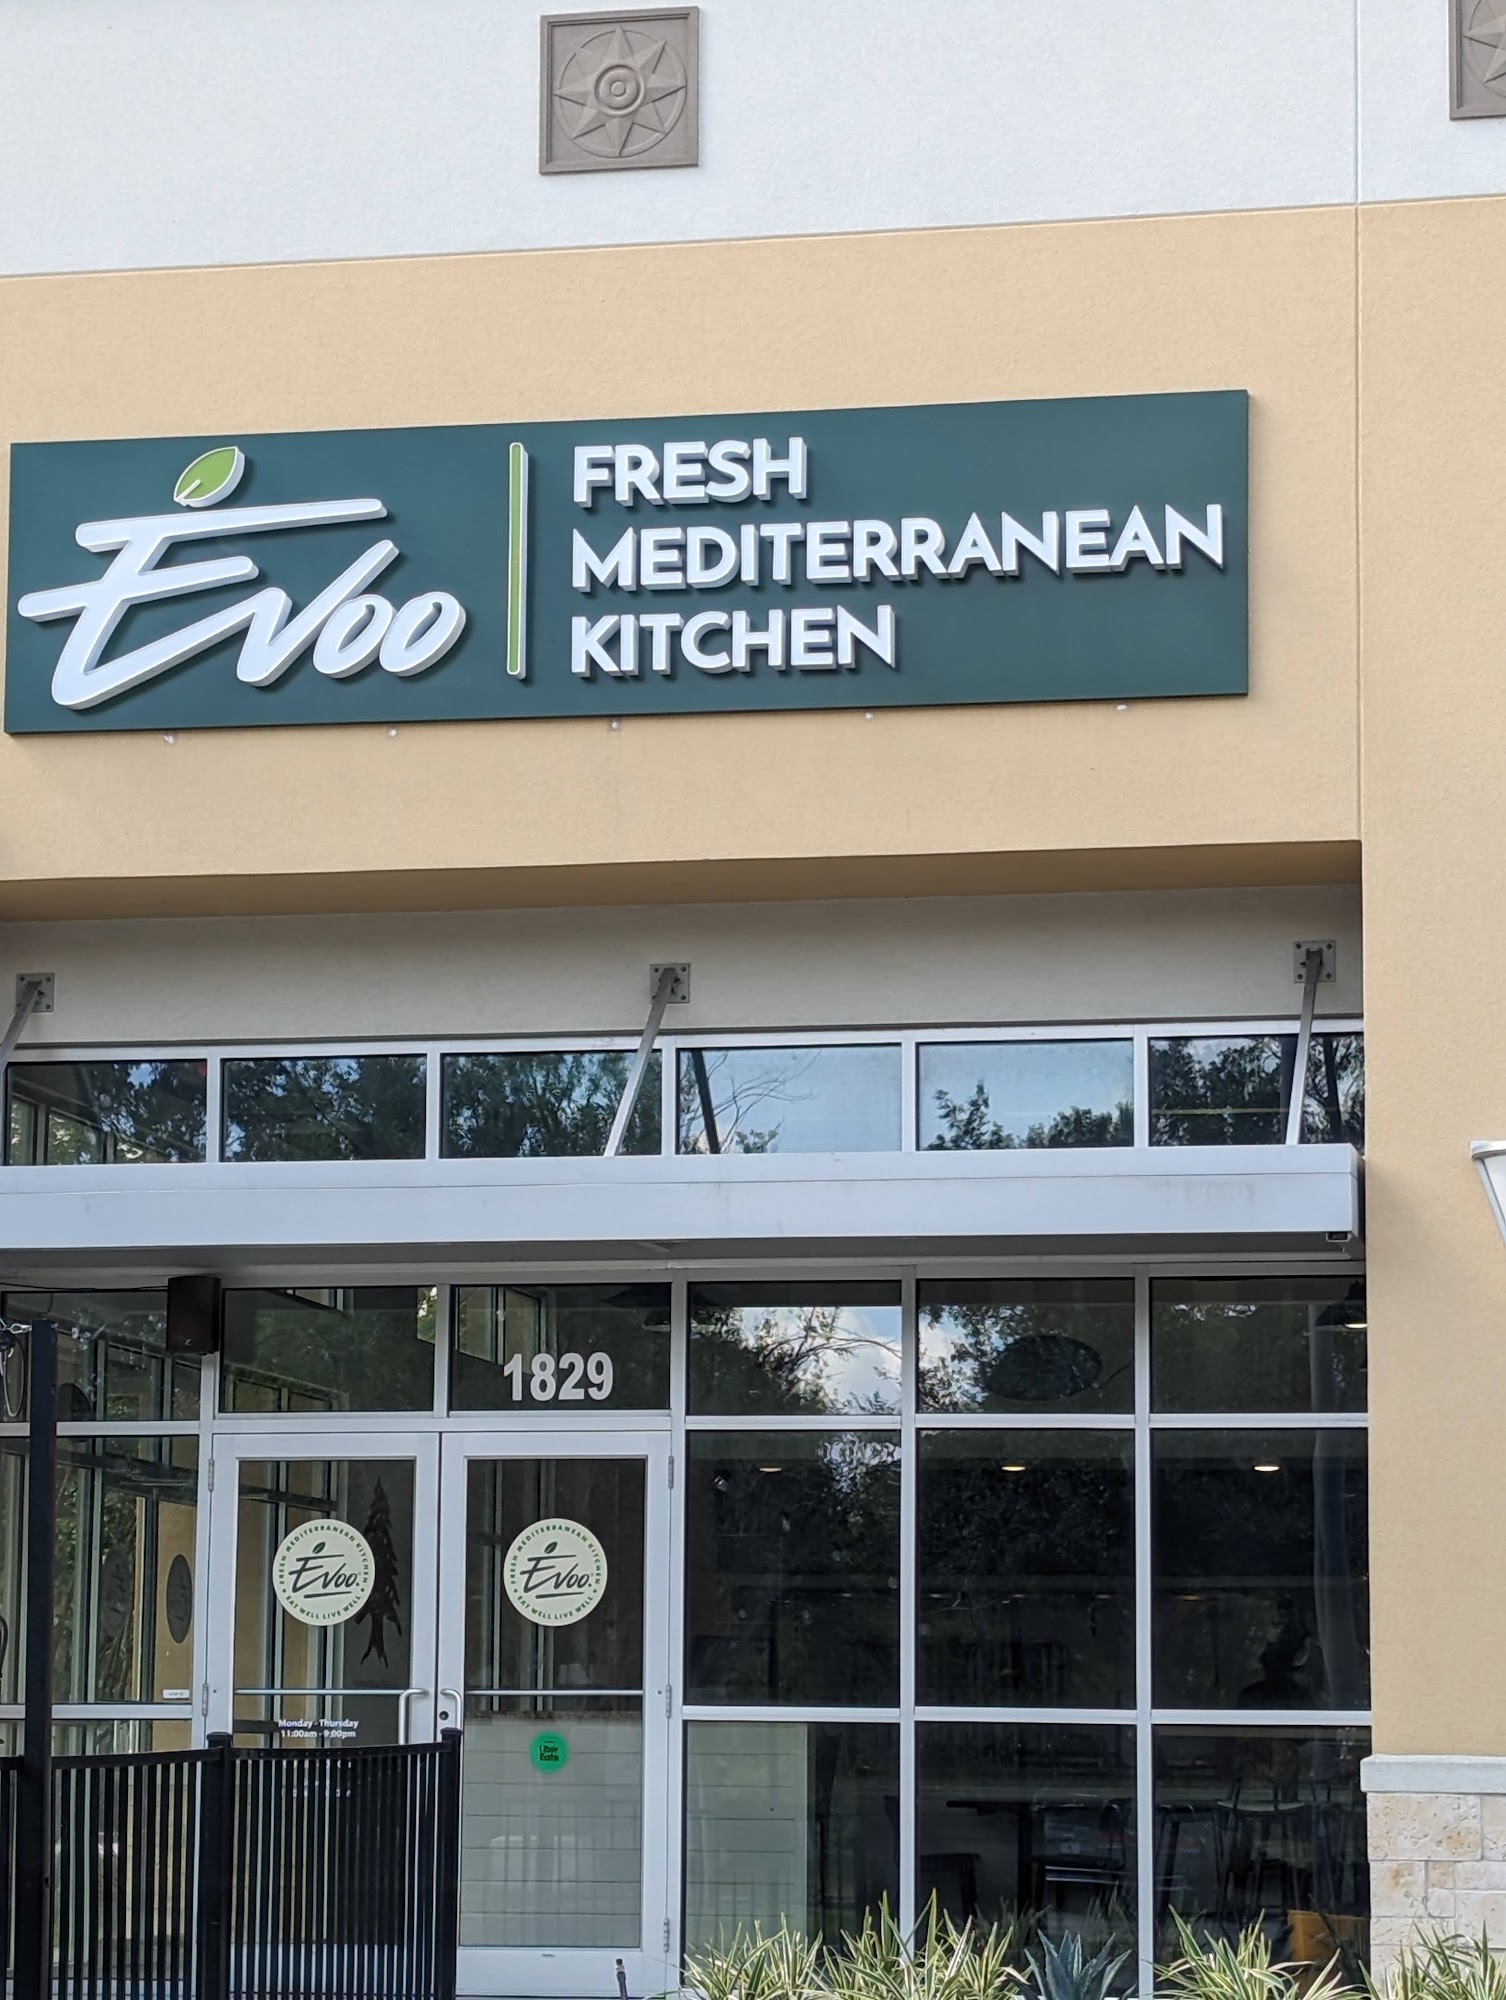 Evoo Fresh Mediterranean Kitchen